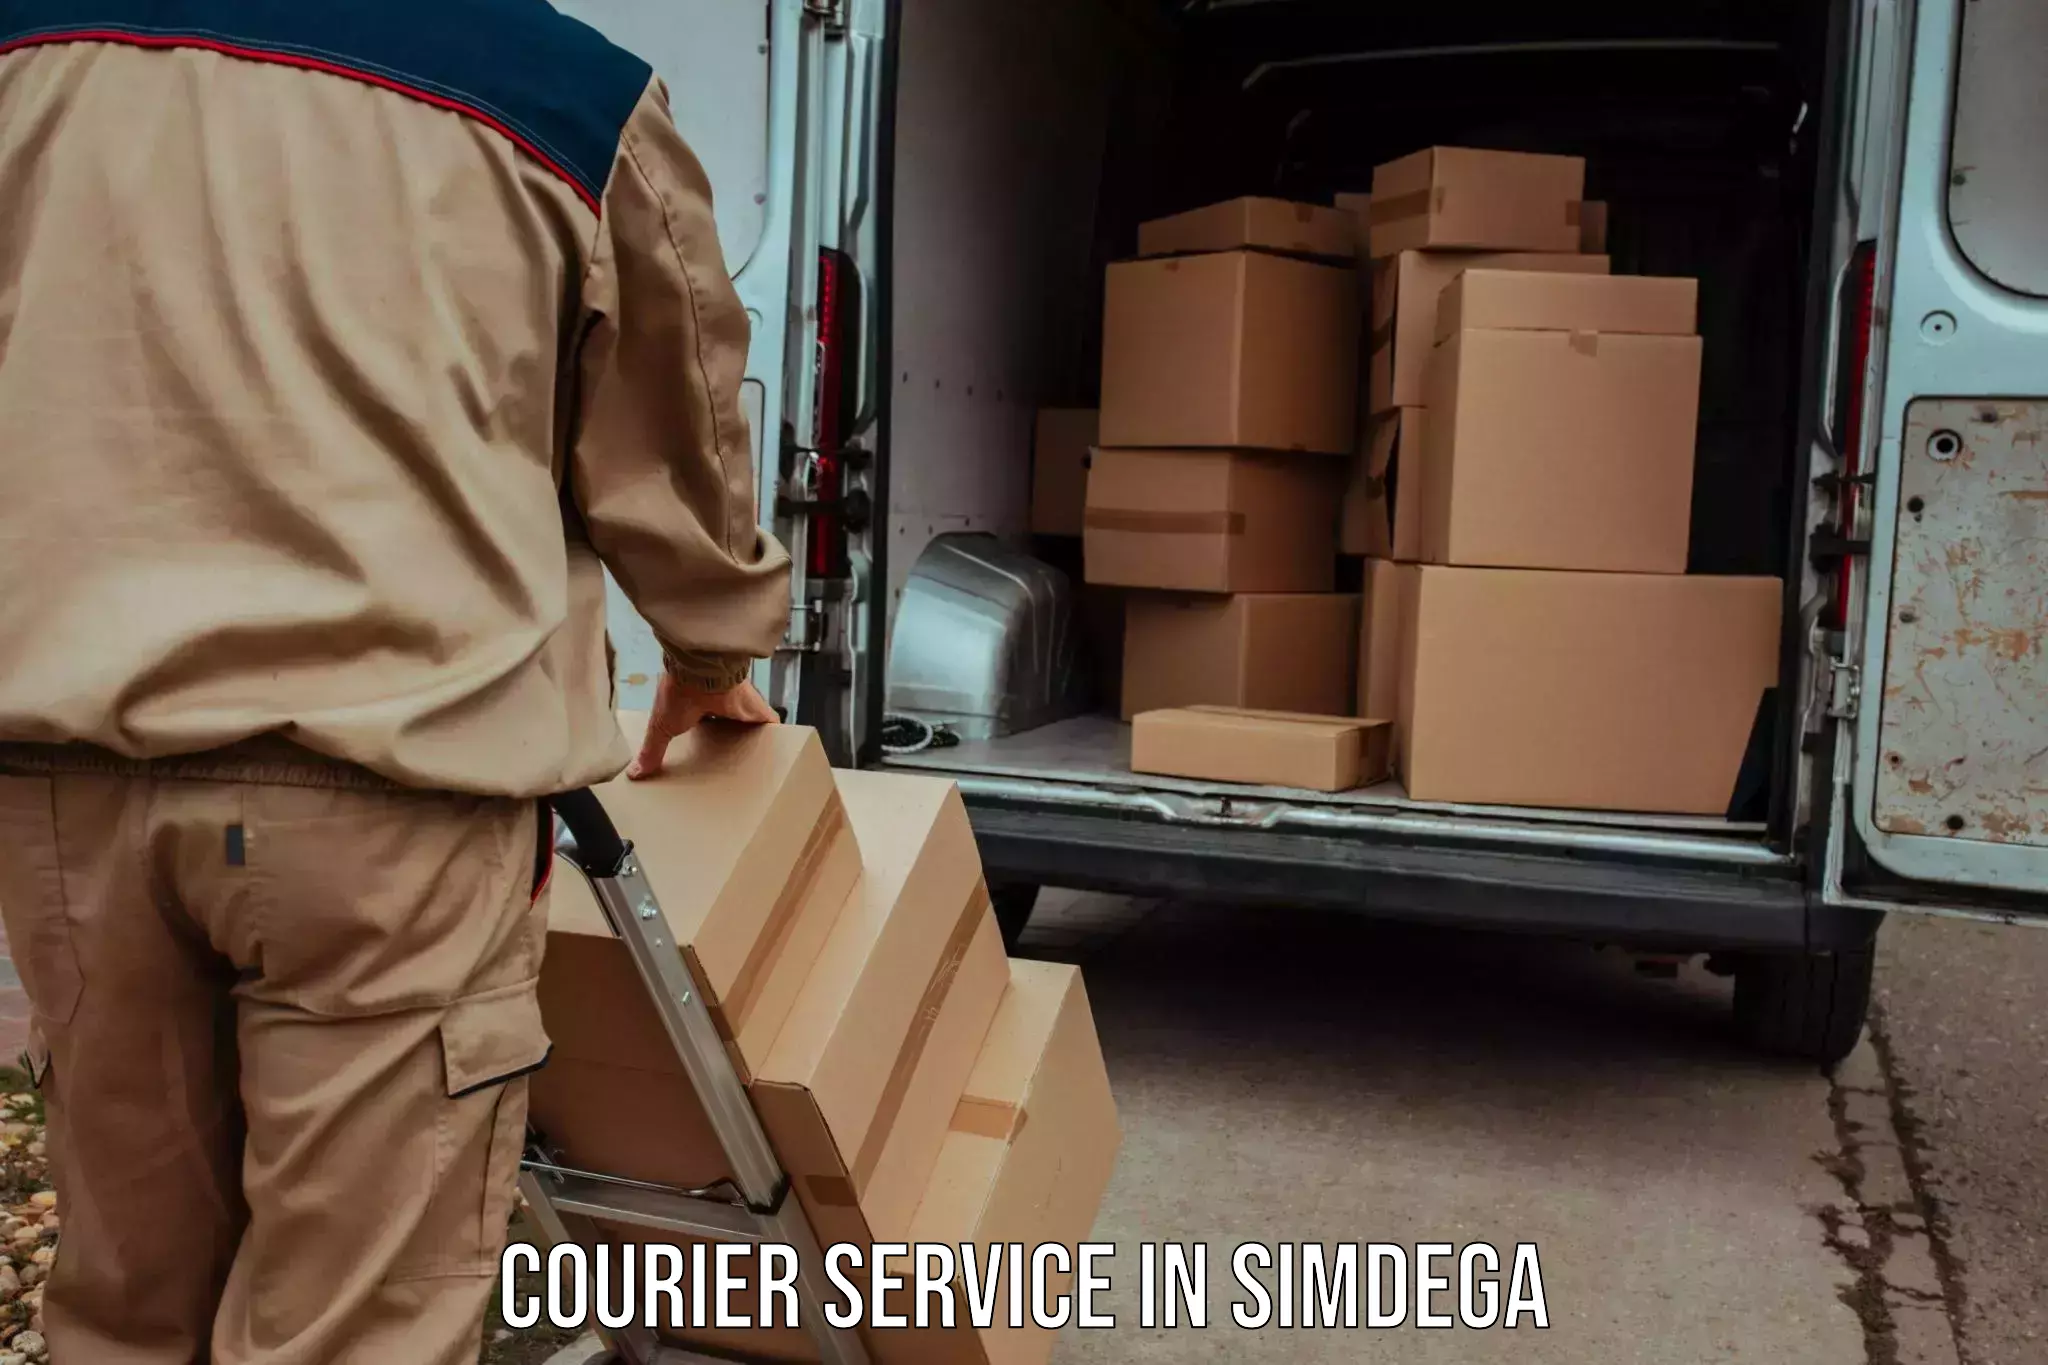 Urban courier service in Simdega